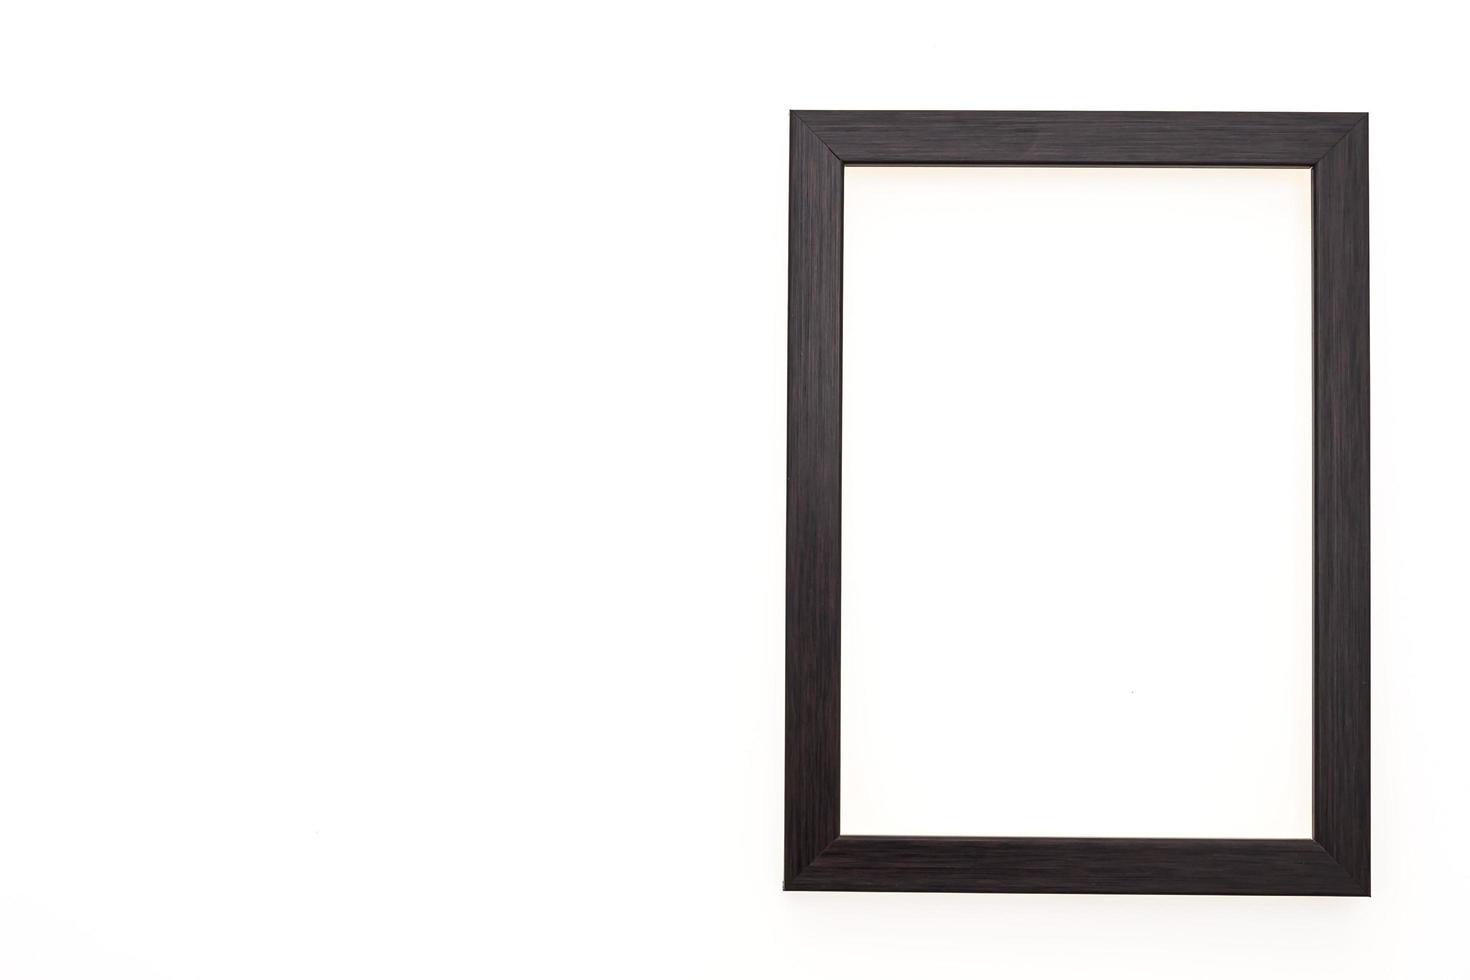 marco de fotos de madera aislado en blanco